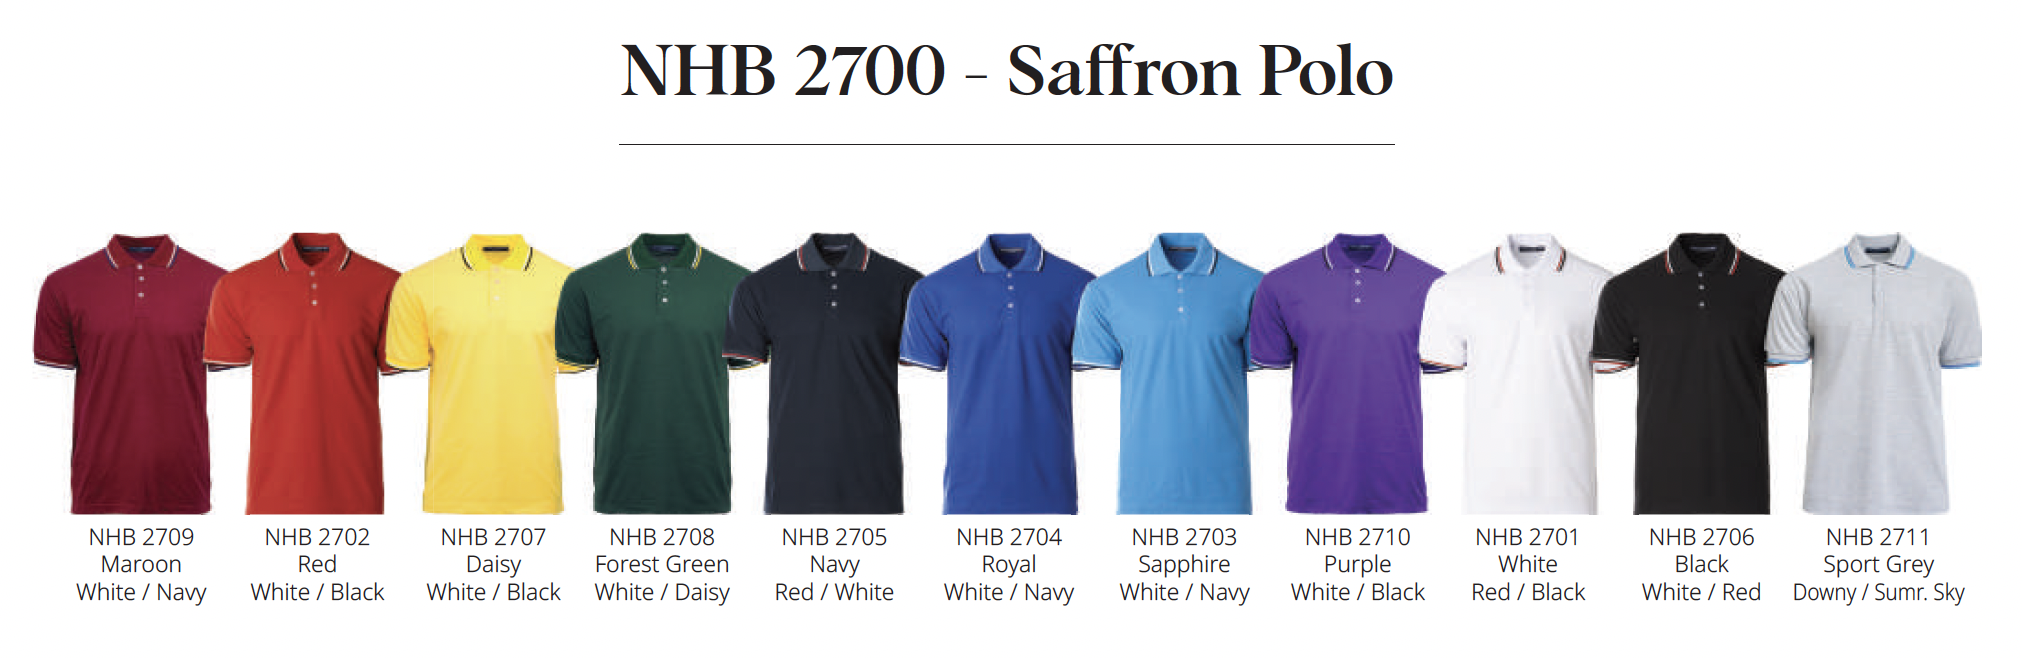 Polo Tshirt Printing_NHB 2700